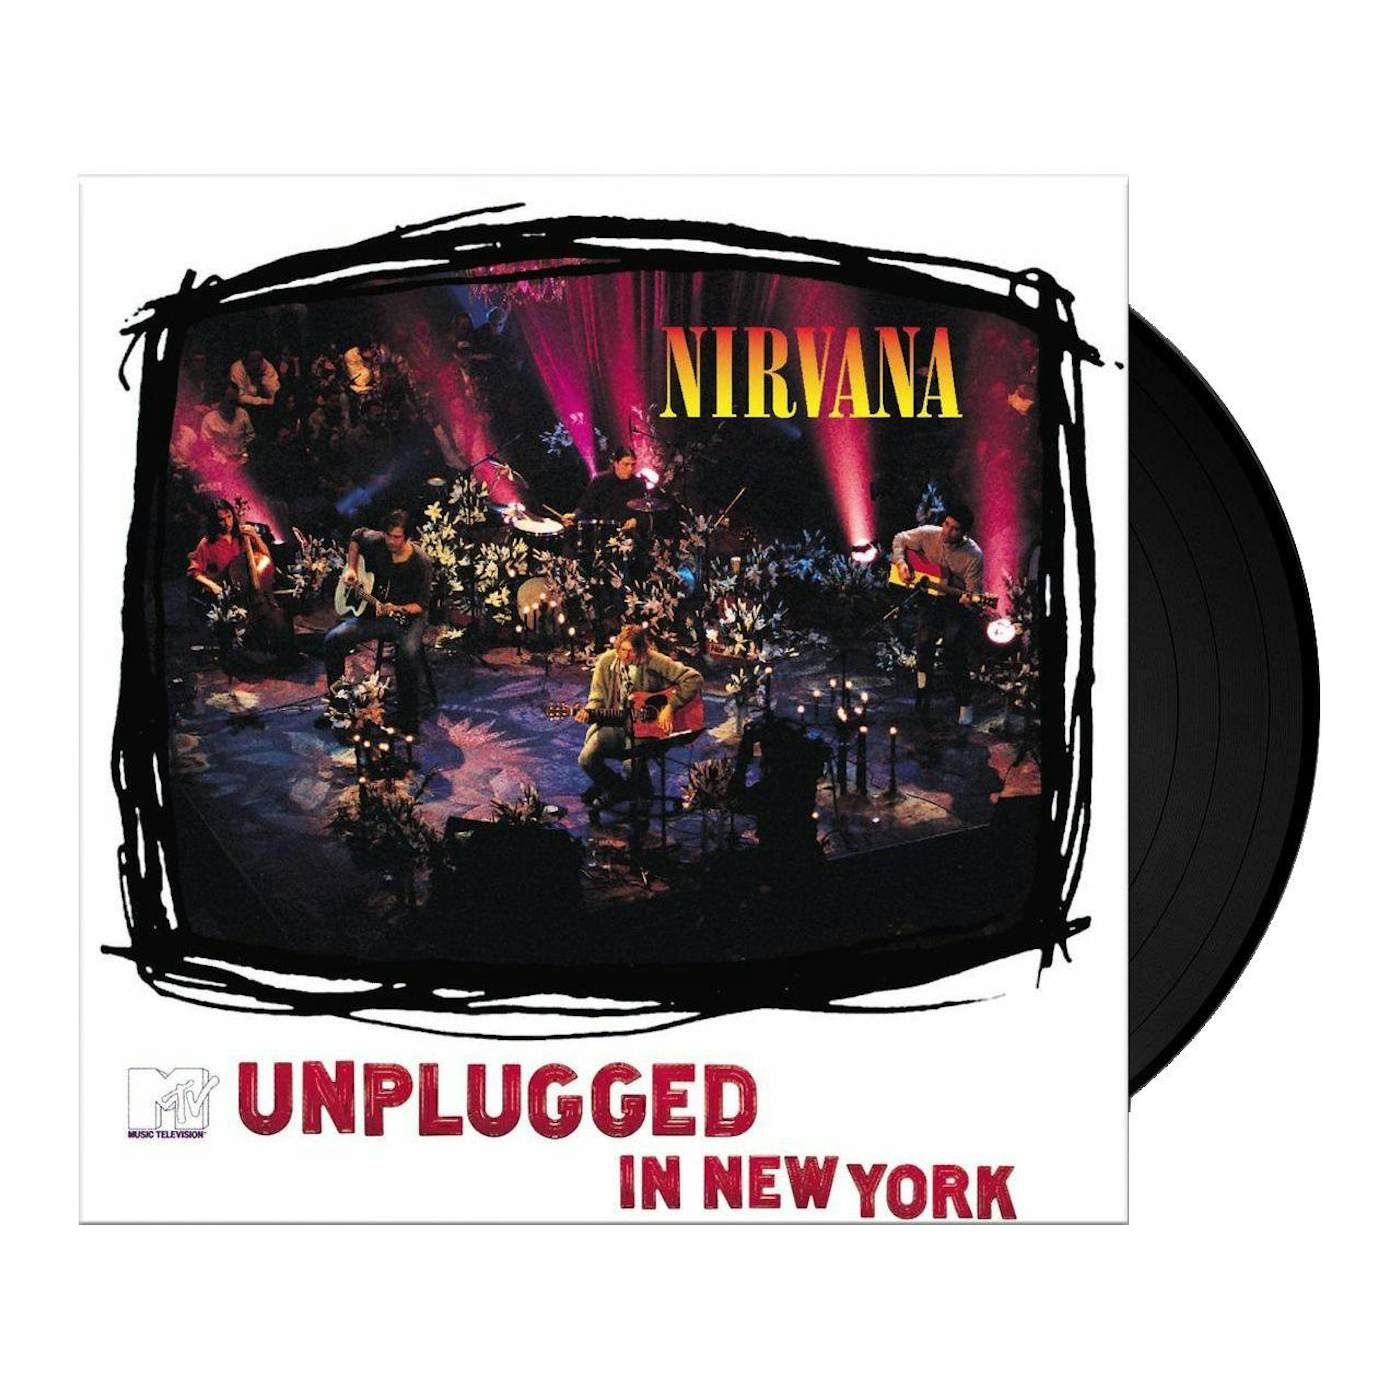 MTV Unplugged In NY Vinyl Record - Nirvana